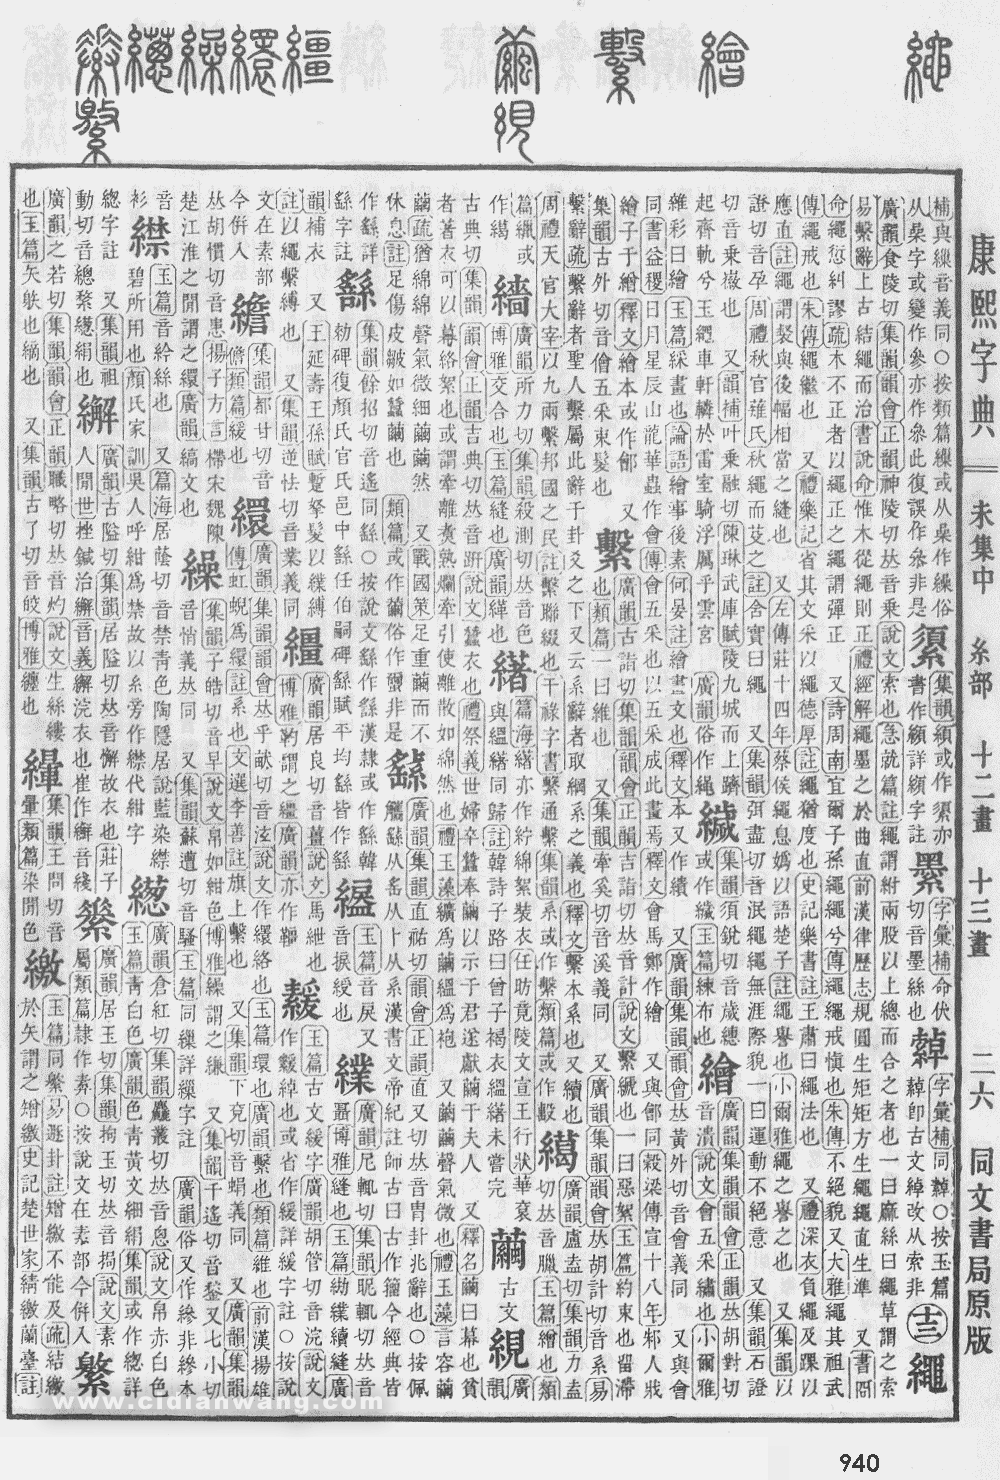 康熙字典掃描版第940頁